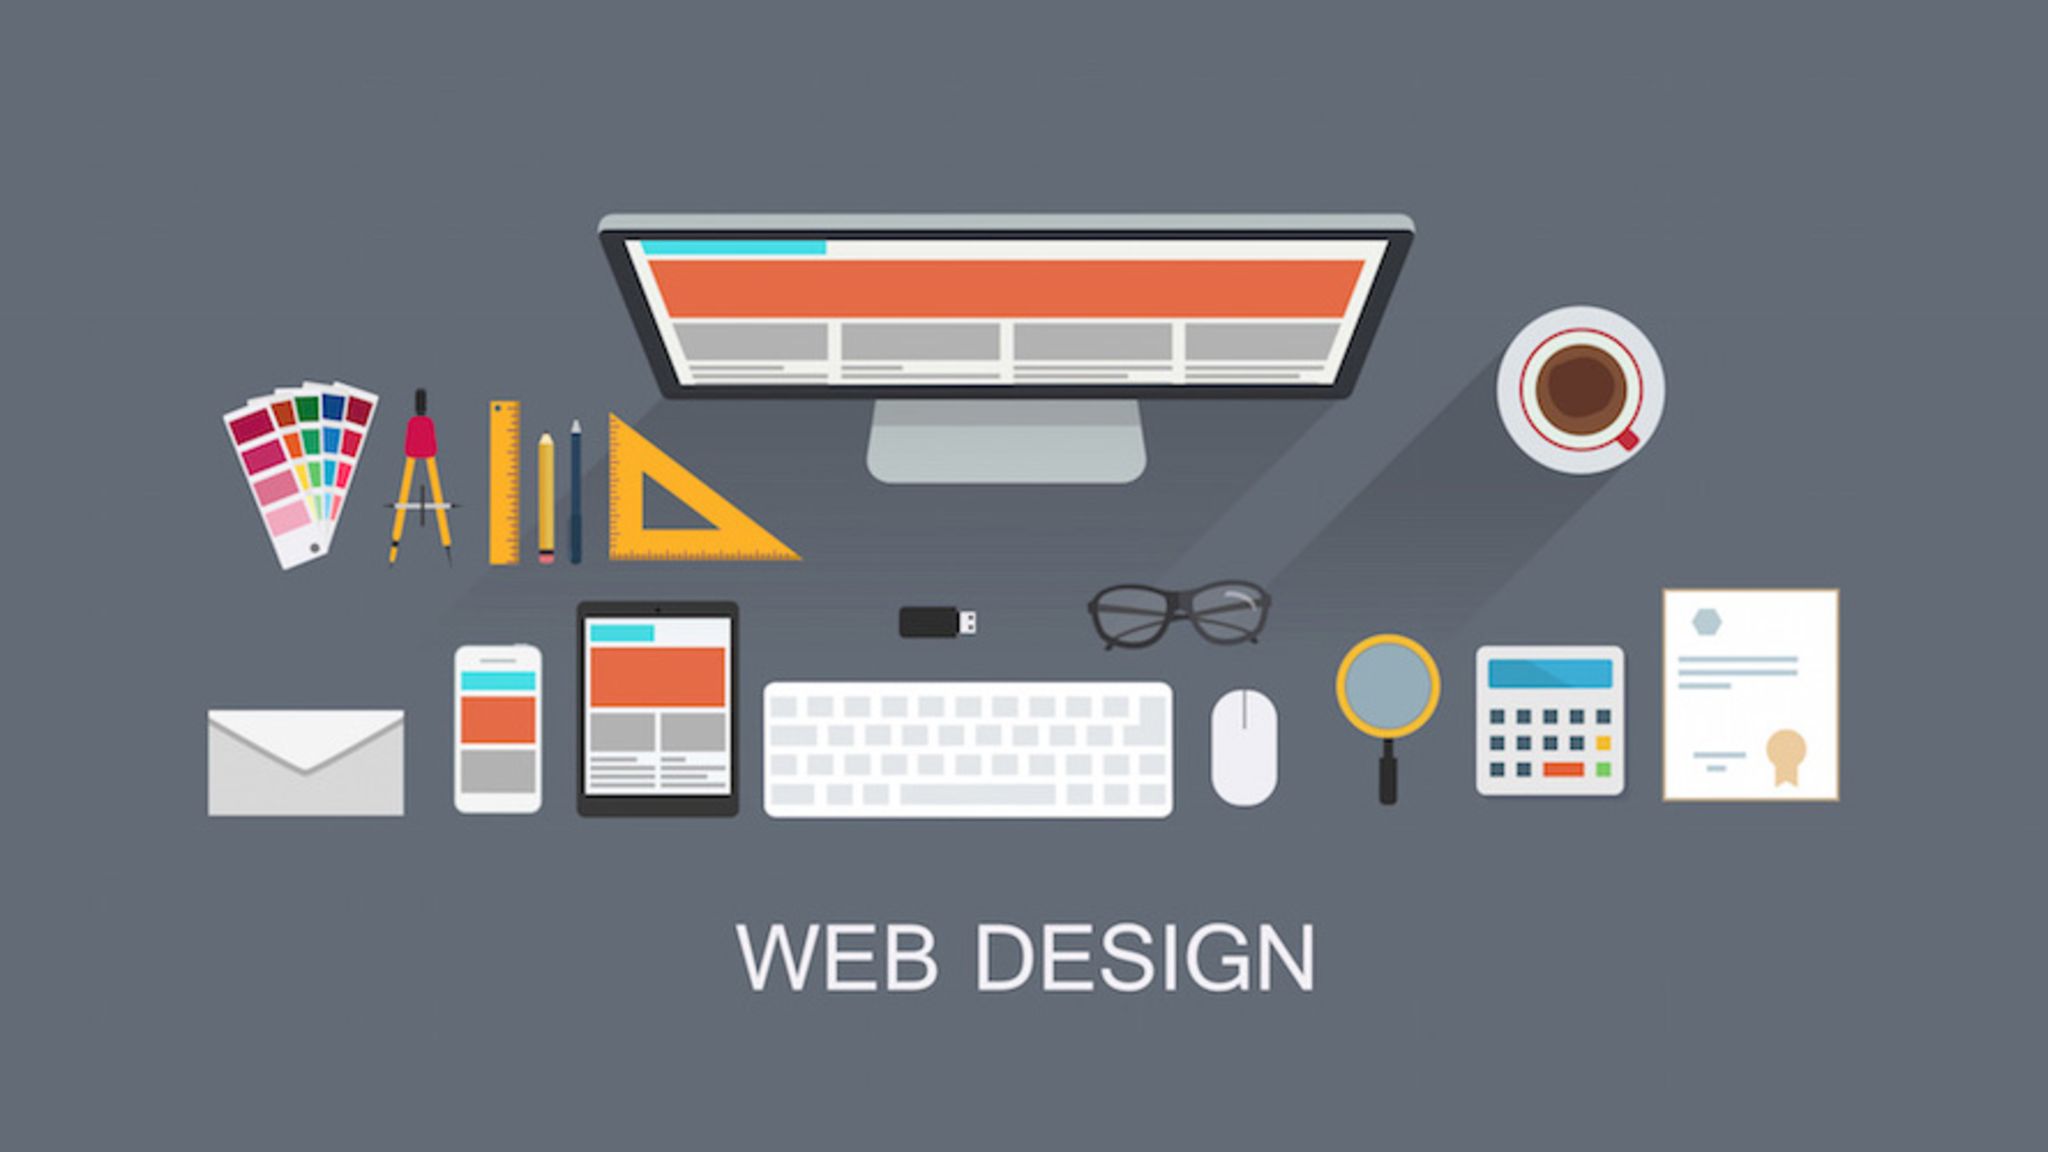 Web Design Providers company in Bangladesh